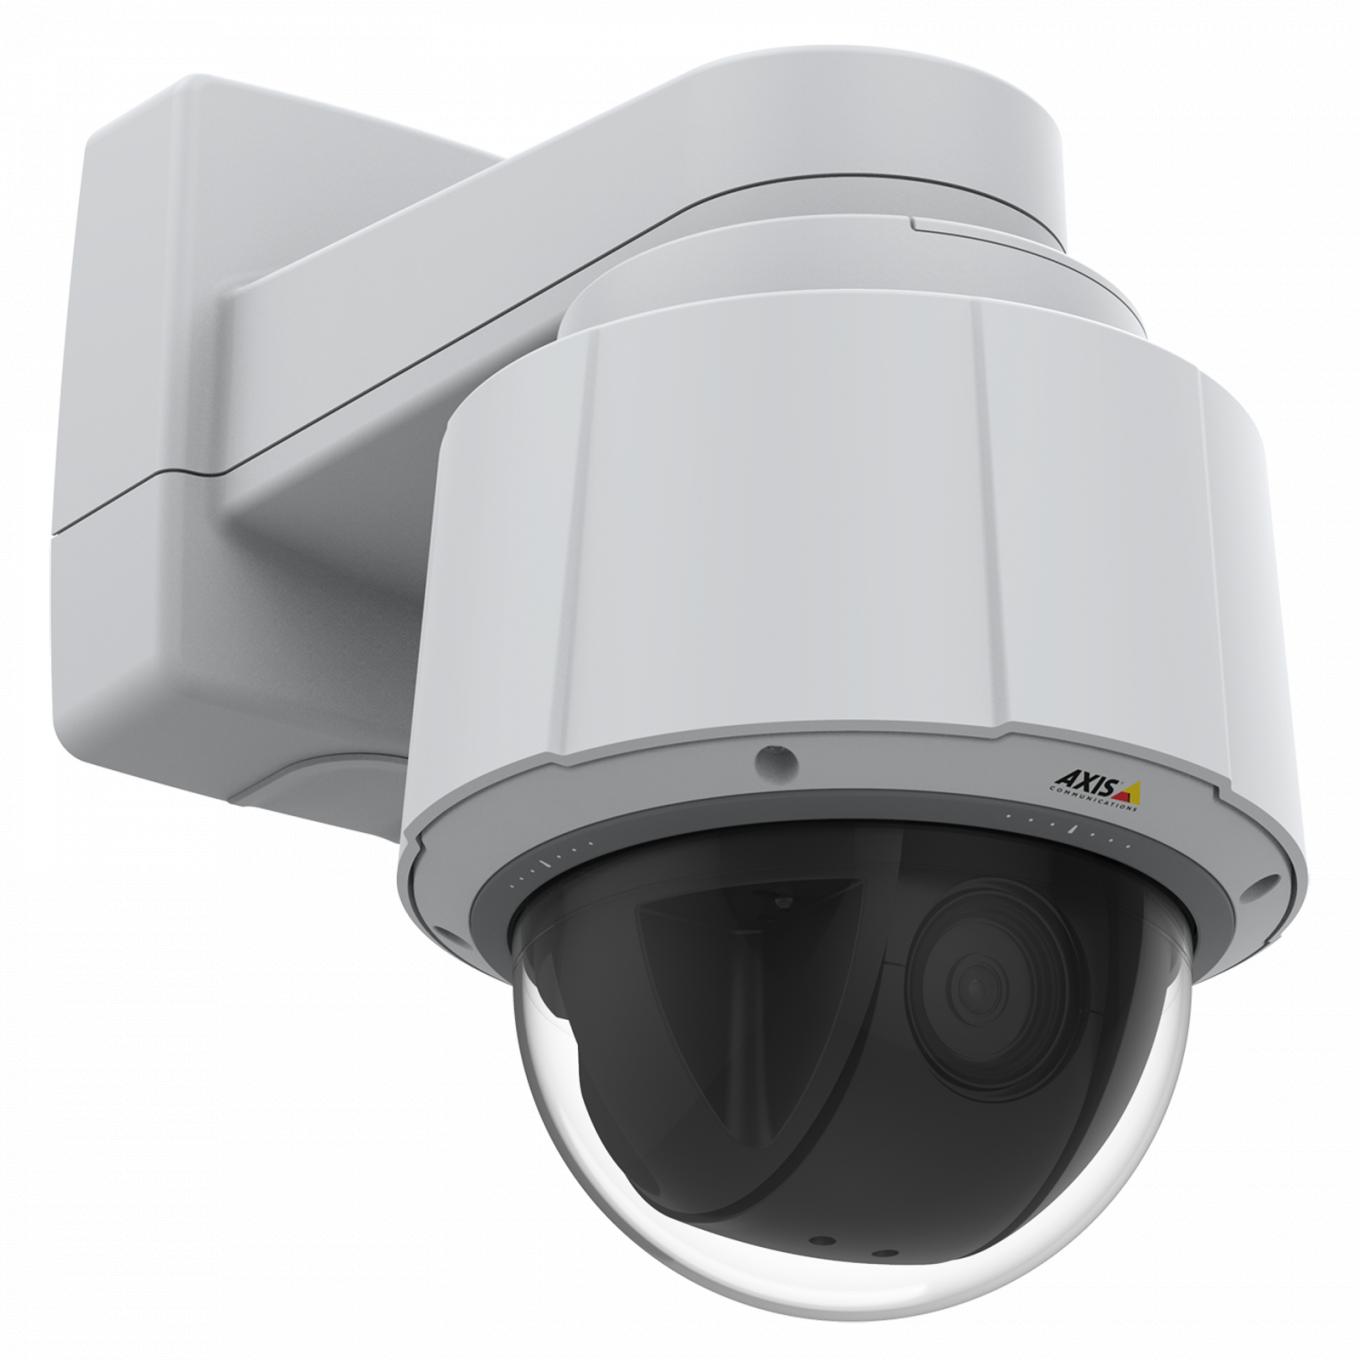 Die Axis IP Camera Q6075 verfügt über eine Innen-PTZ mit HDTV 720p und 30-fachem optischen Zoom